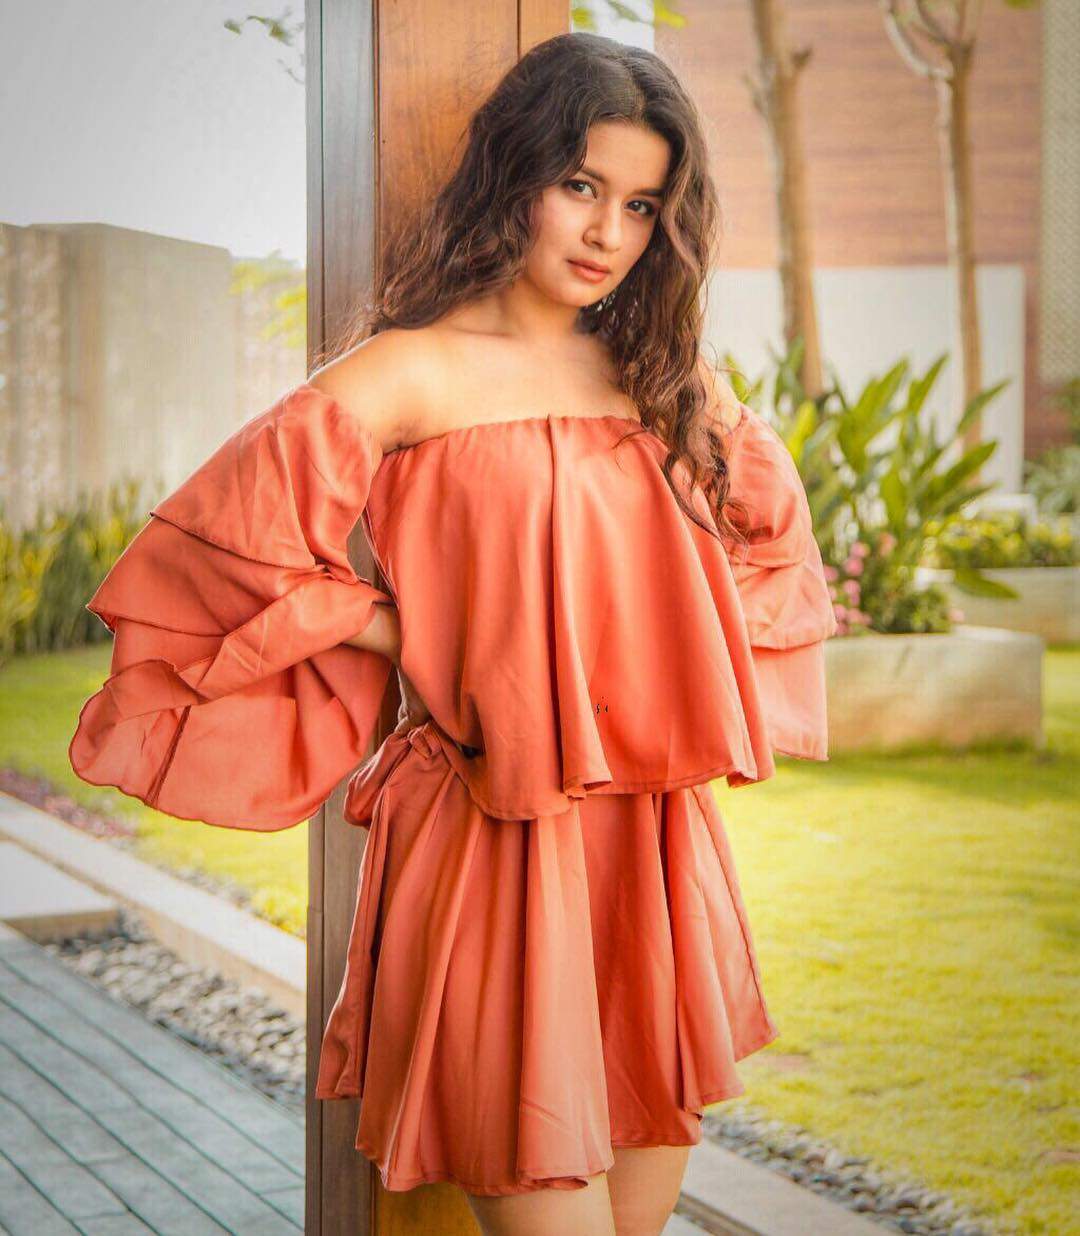 Actress Avneet Kaur HD Photos and Wallpapers 2018